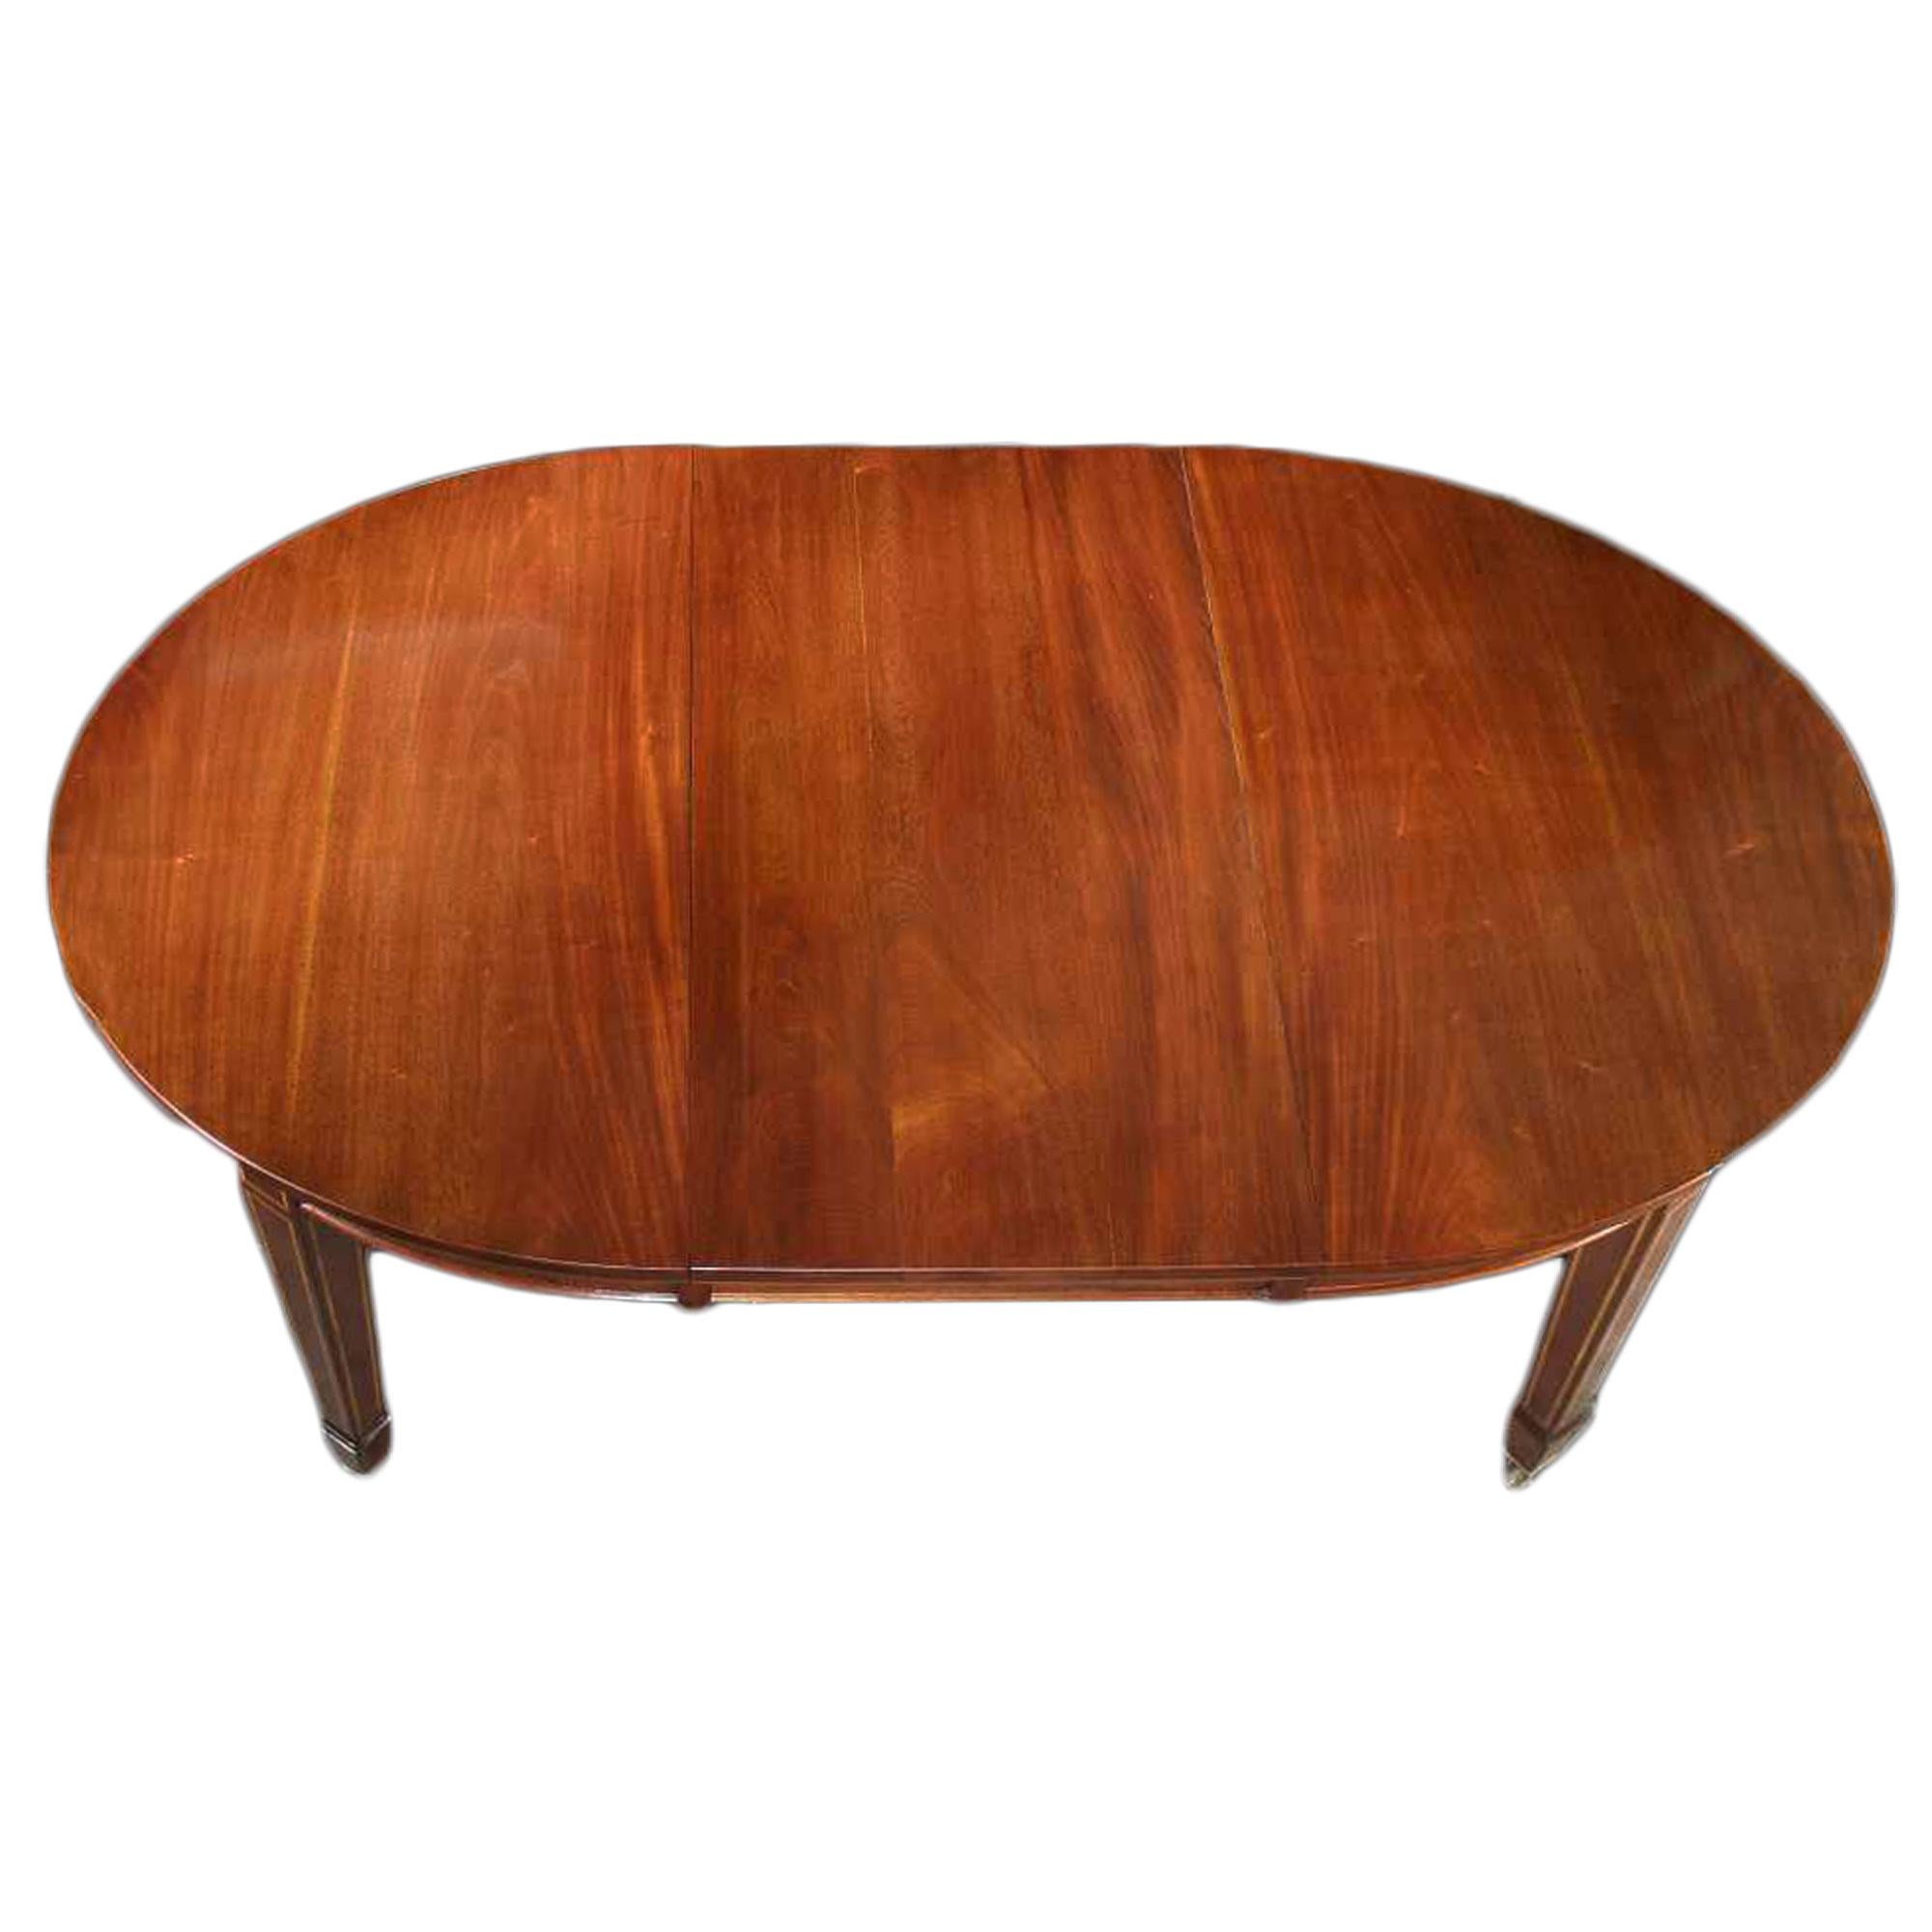 Ein exquisiter englischer edwardianischer Mahagoni-Esstisch aus dem 19. Jahrhundert, um 1880. Der Tisch mit einer Verlängerung wird mit dem Original-Kurbelmechanismus installiert. Der auf vier geraden, quadratischen Beinen stehende Tisch mit einer